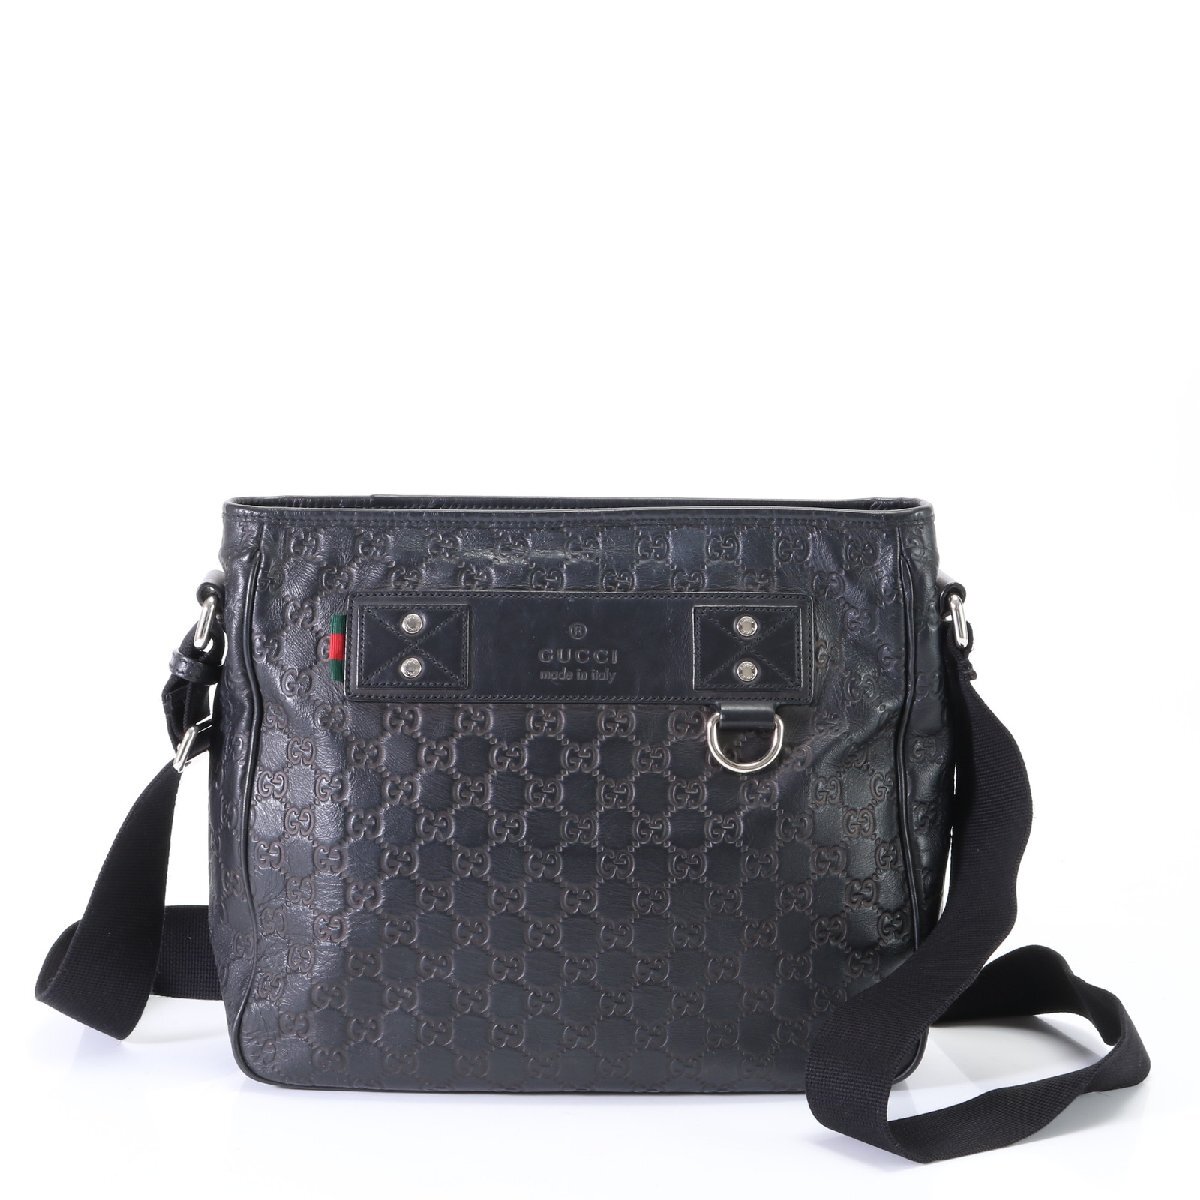 1 иен # превосходный товар # Gucci # Guccisima 322080 кожа сумка на плечо наклонный ..mesenja- ходить на работу натуральная кожа черный чёрный A4 мужской EHM T2-4